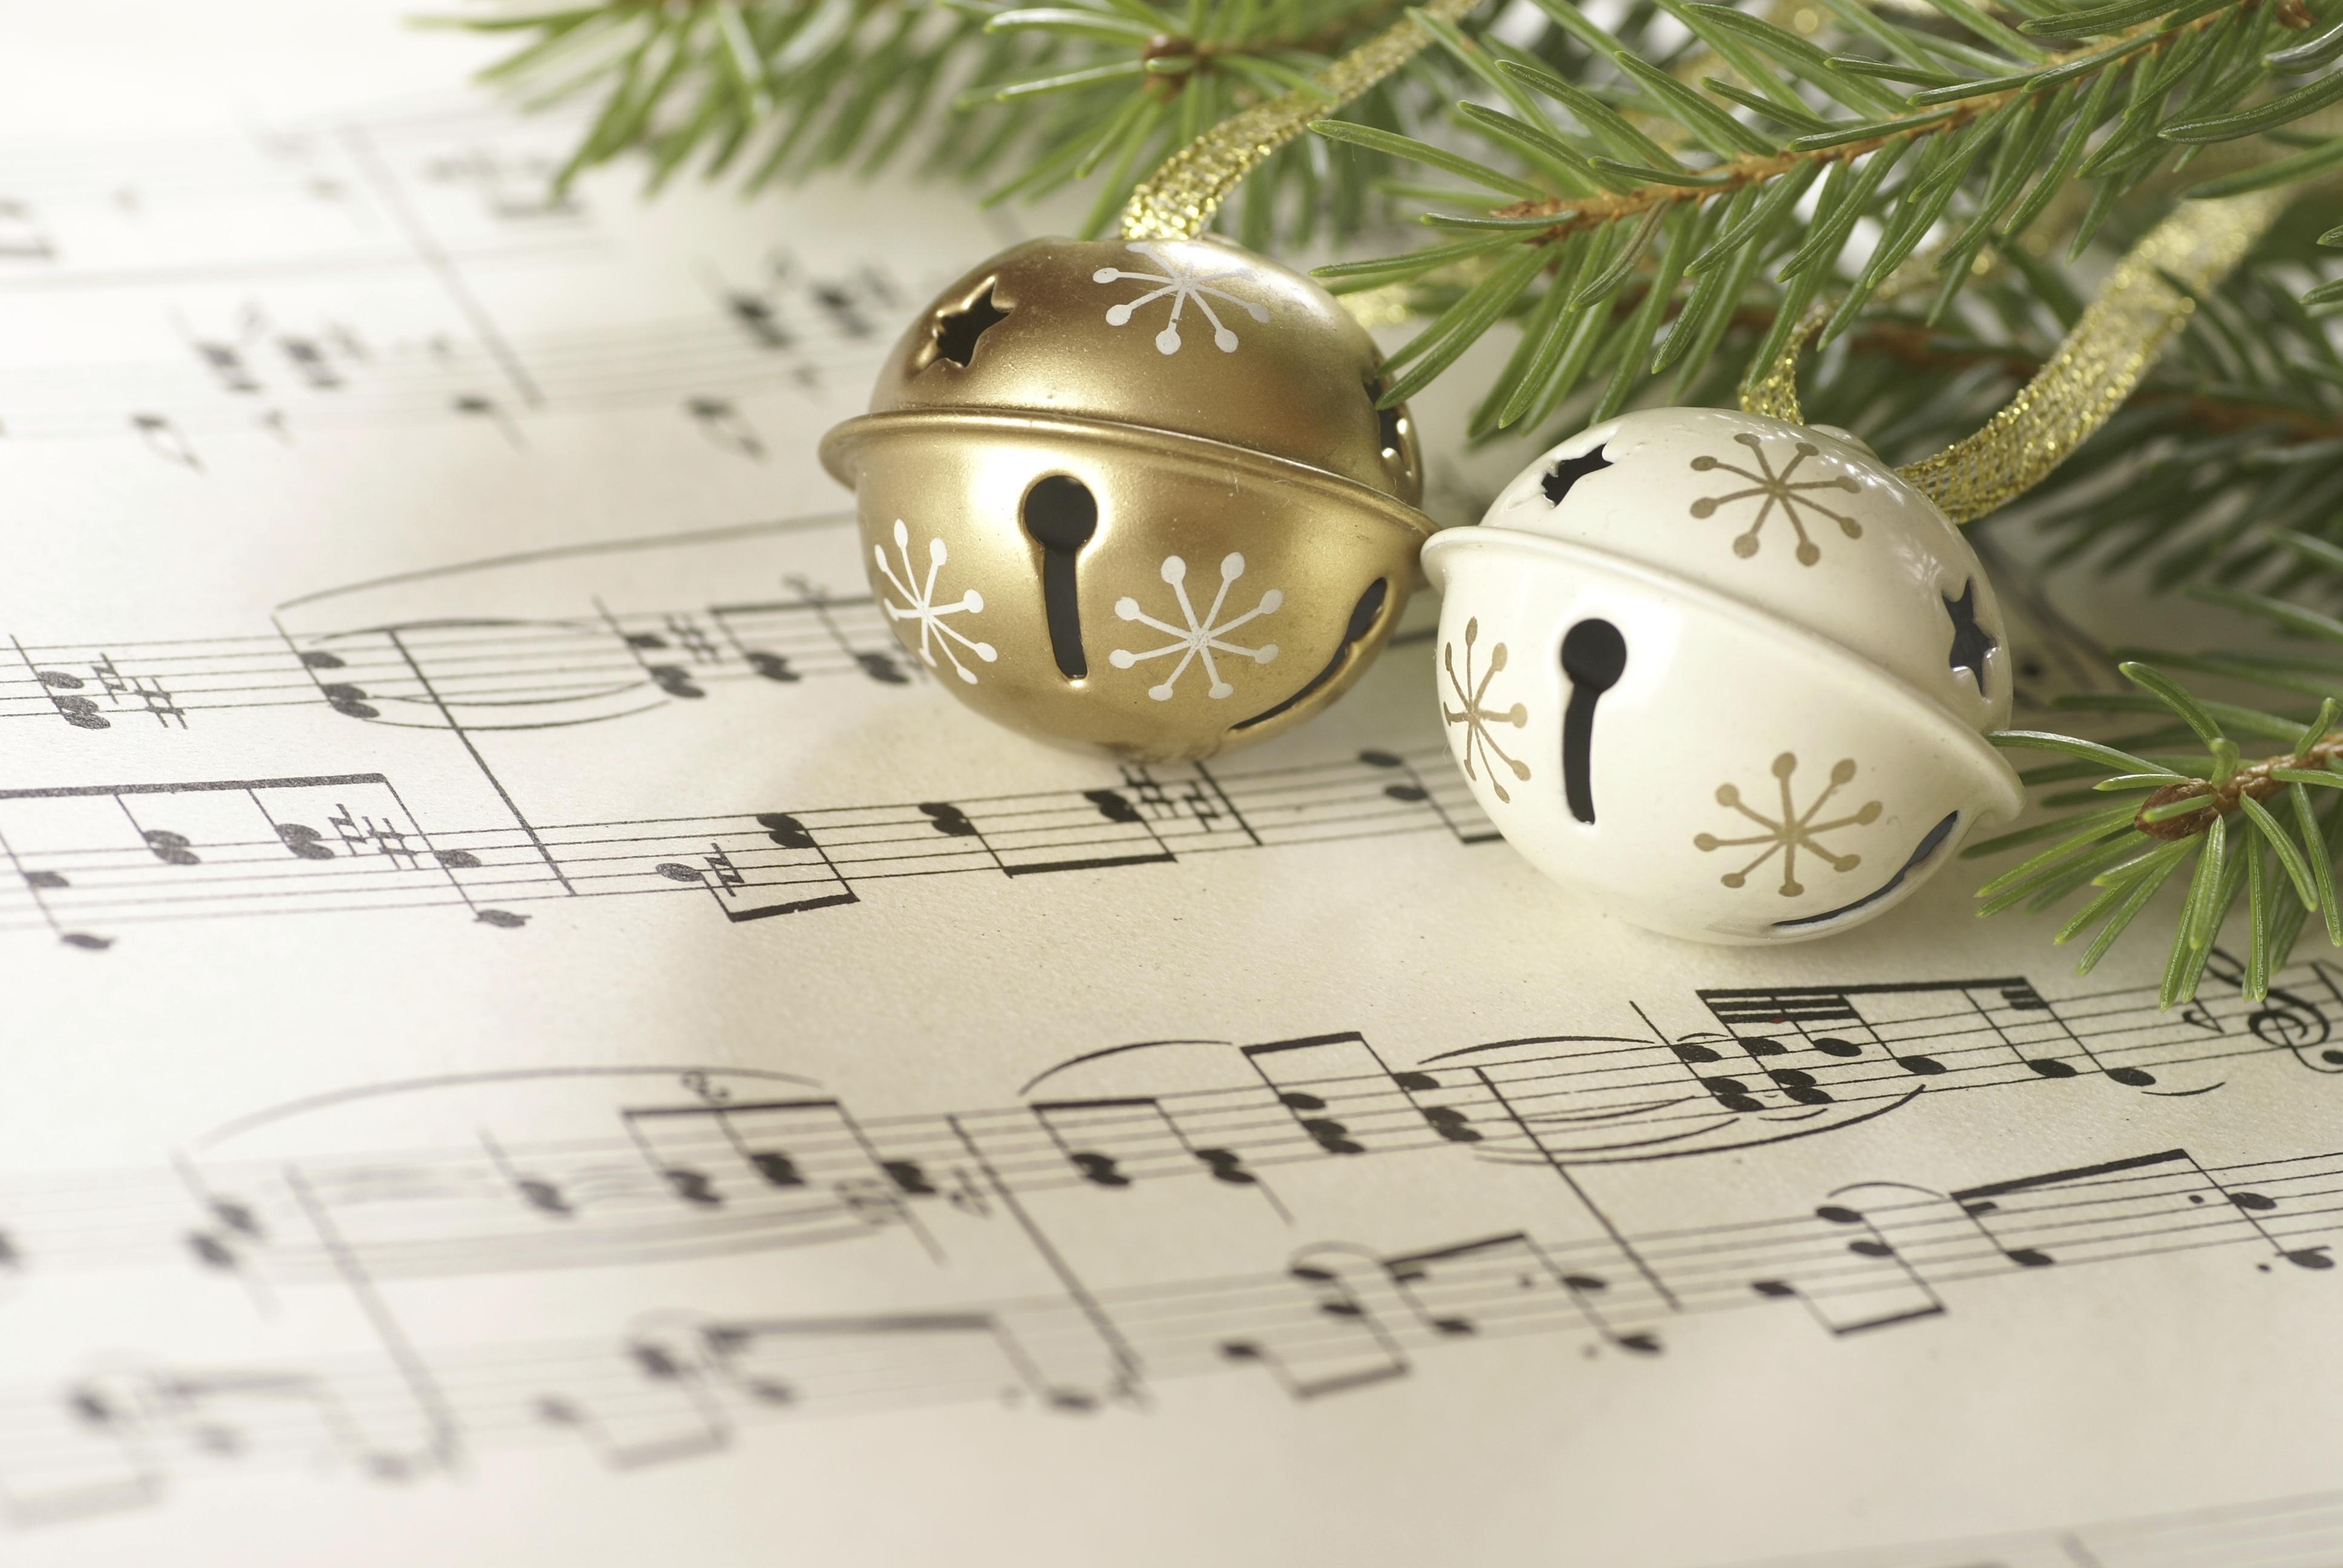 Nhạc giáng sinh là món quà ý nghĩa giúp chúng ta cảm nhận được không khí Giáng sinh ngập tràn trong cảm xúc và tinh thần. Hãy cùng tải các hình nền nhạc giáng sinh để cảm nhận những điều tuyệt vời này ngay trên điện thoại của bạn.